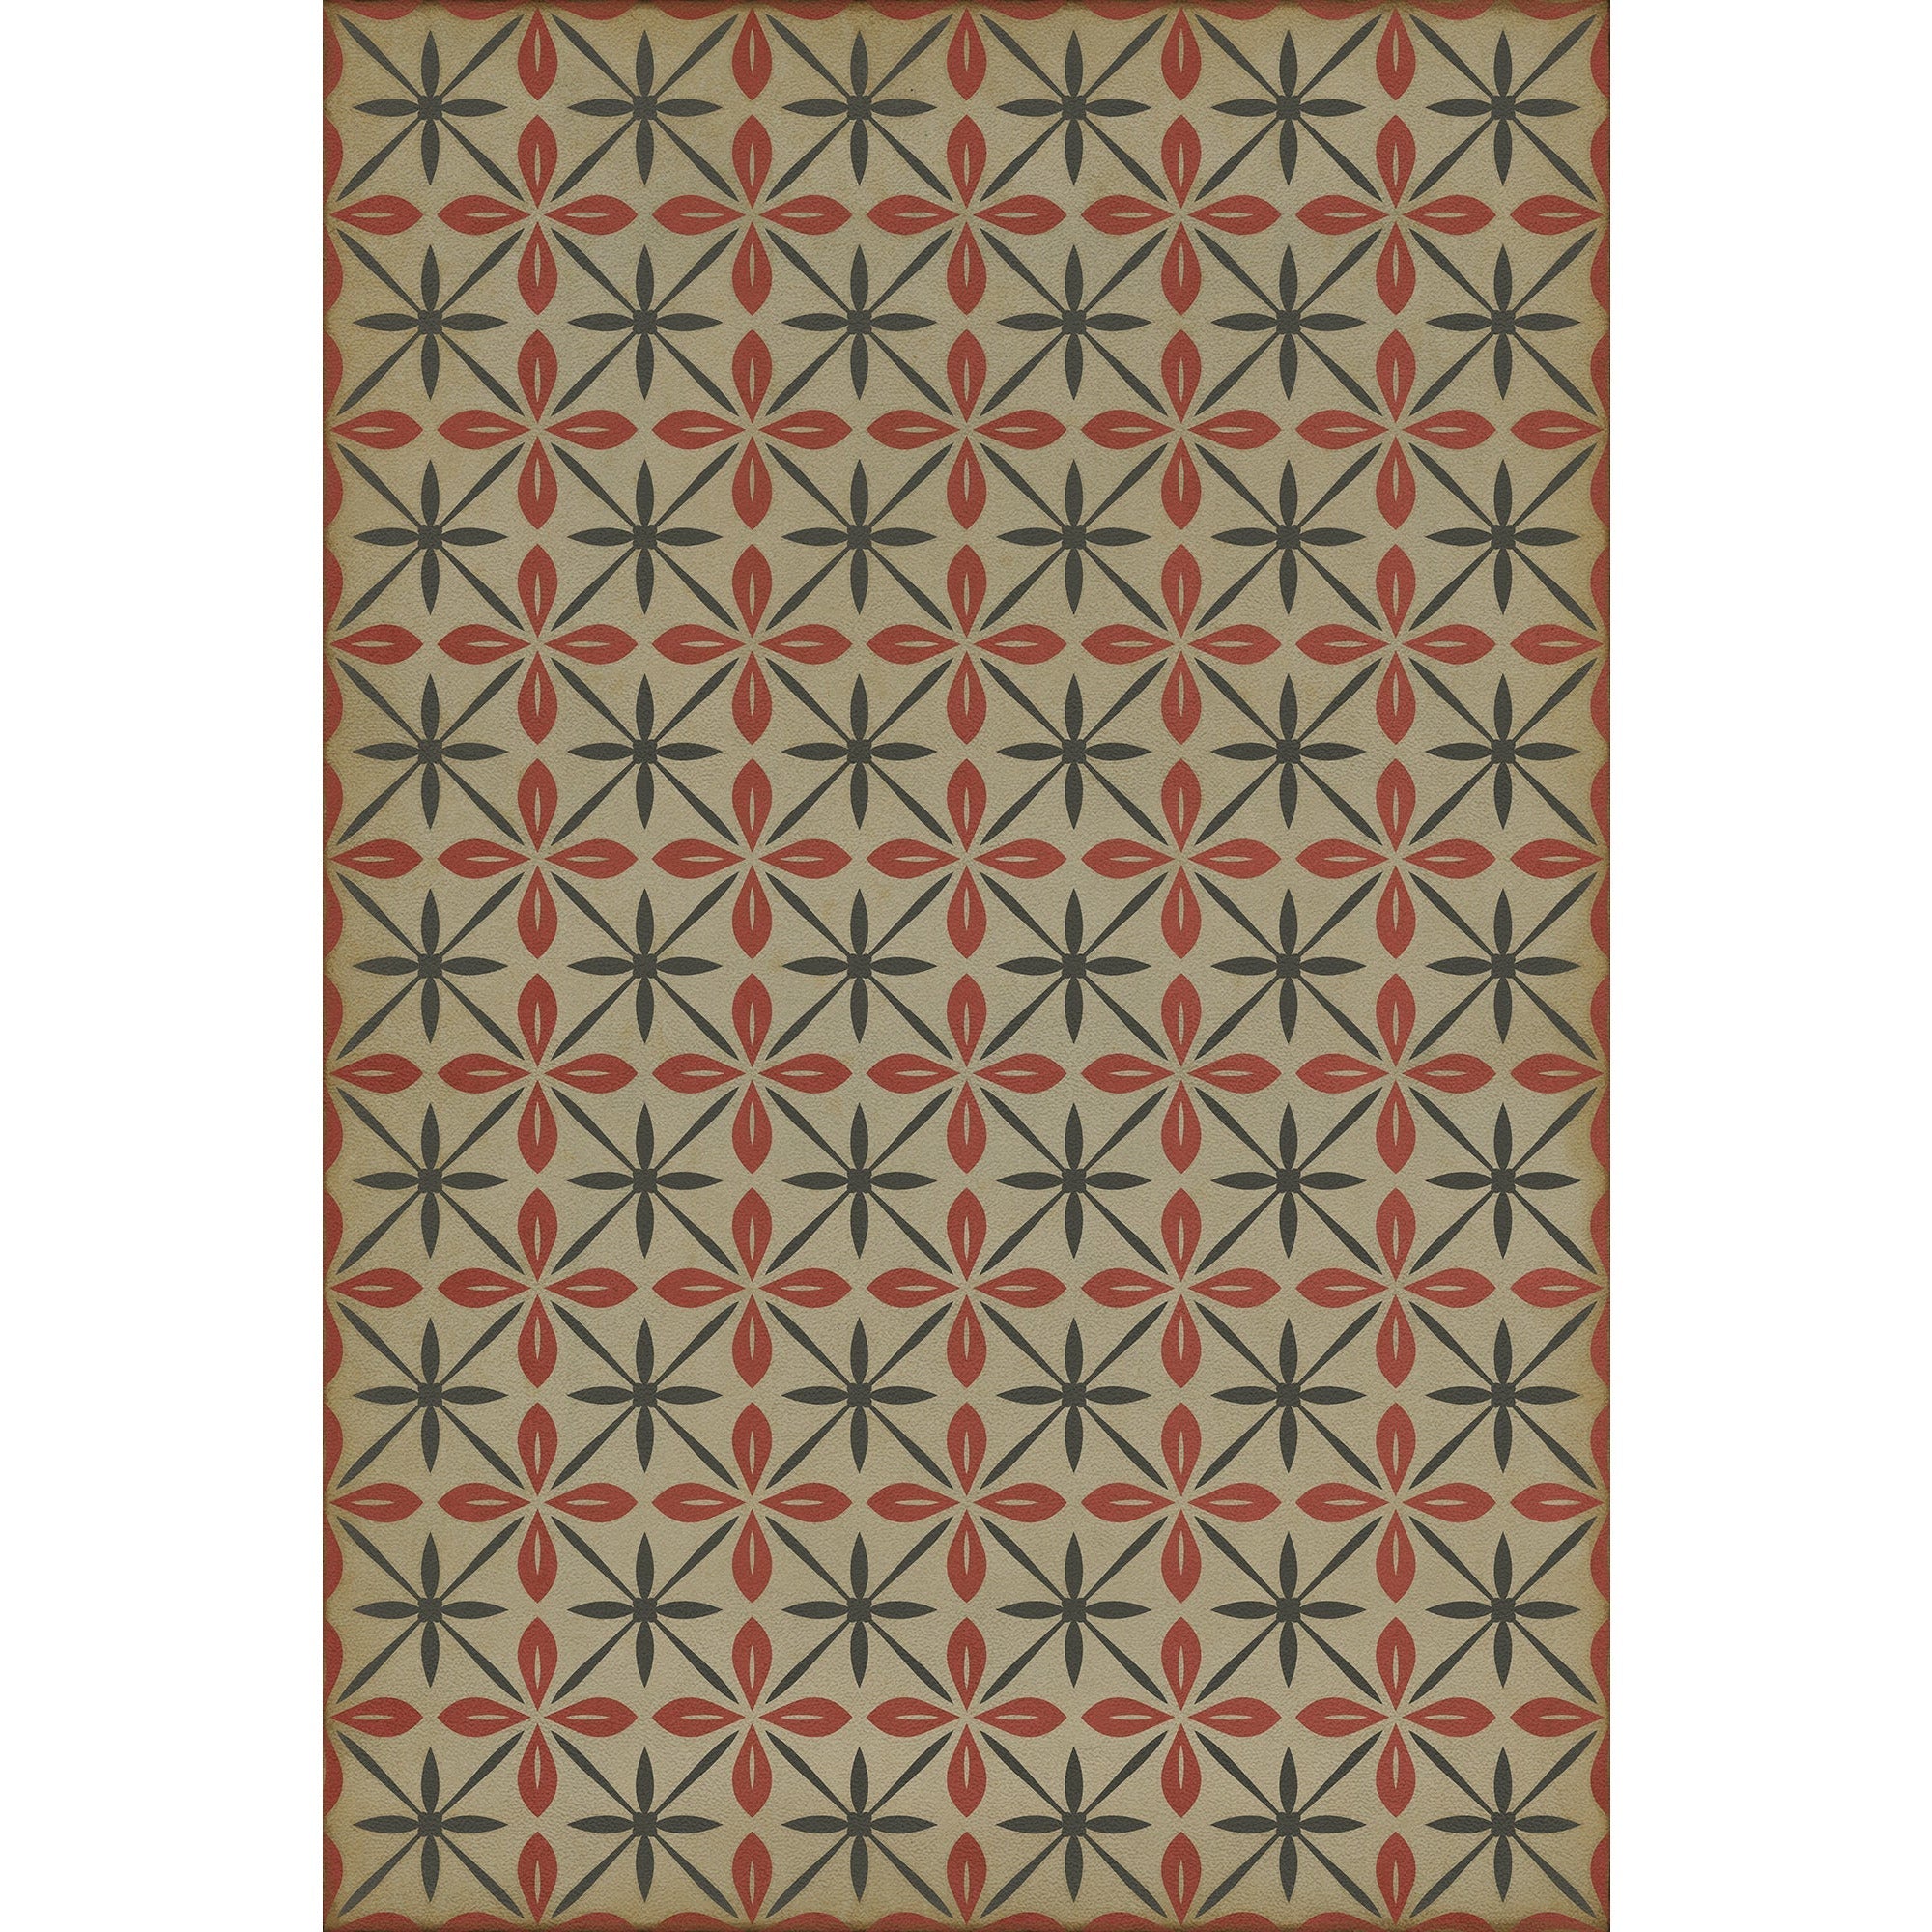 Pattern 81 the Soda Jerk Vinyl Floor Cloth